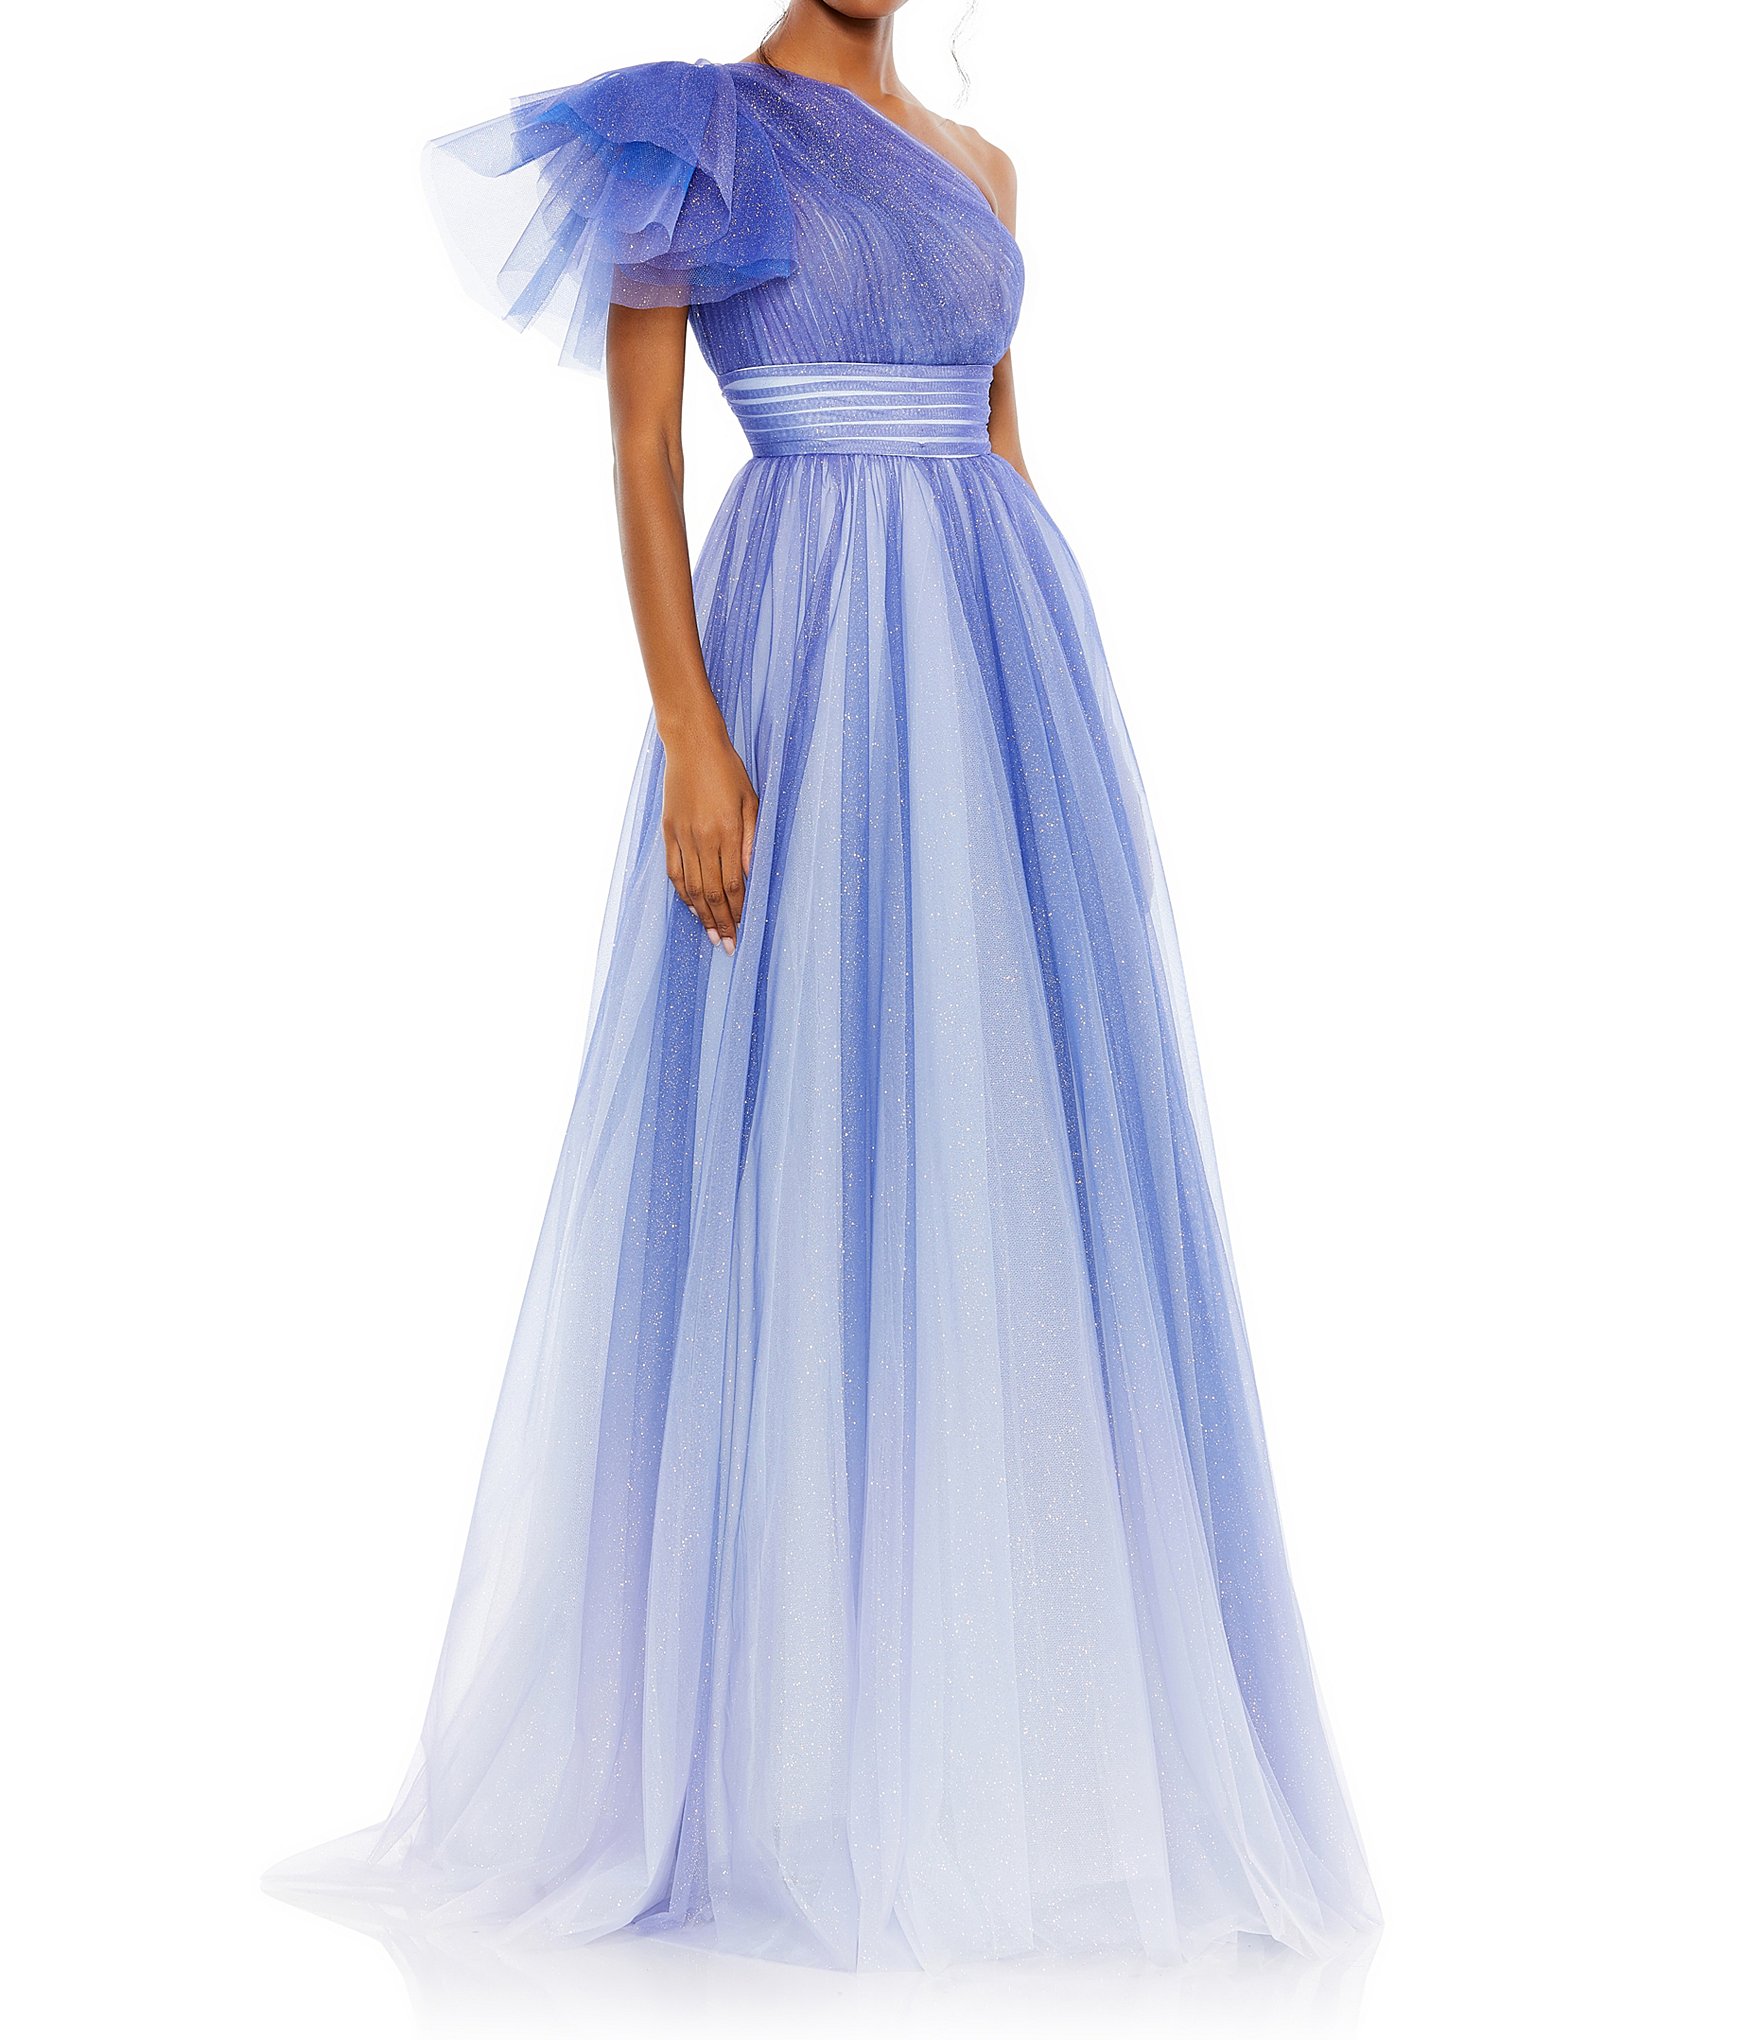 sage dress: Women's Formal Dresses & Evening Gowns | Dillard's